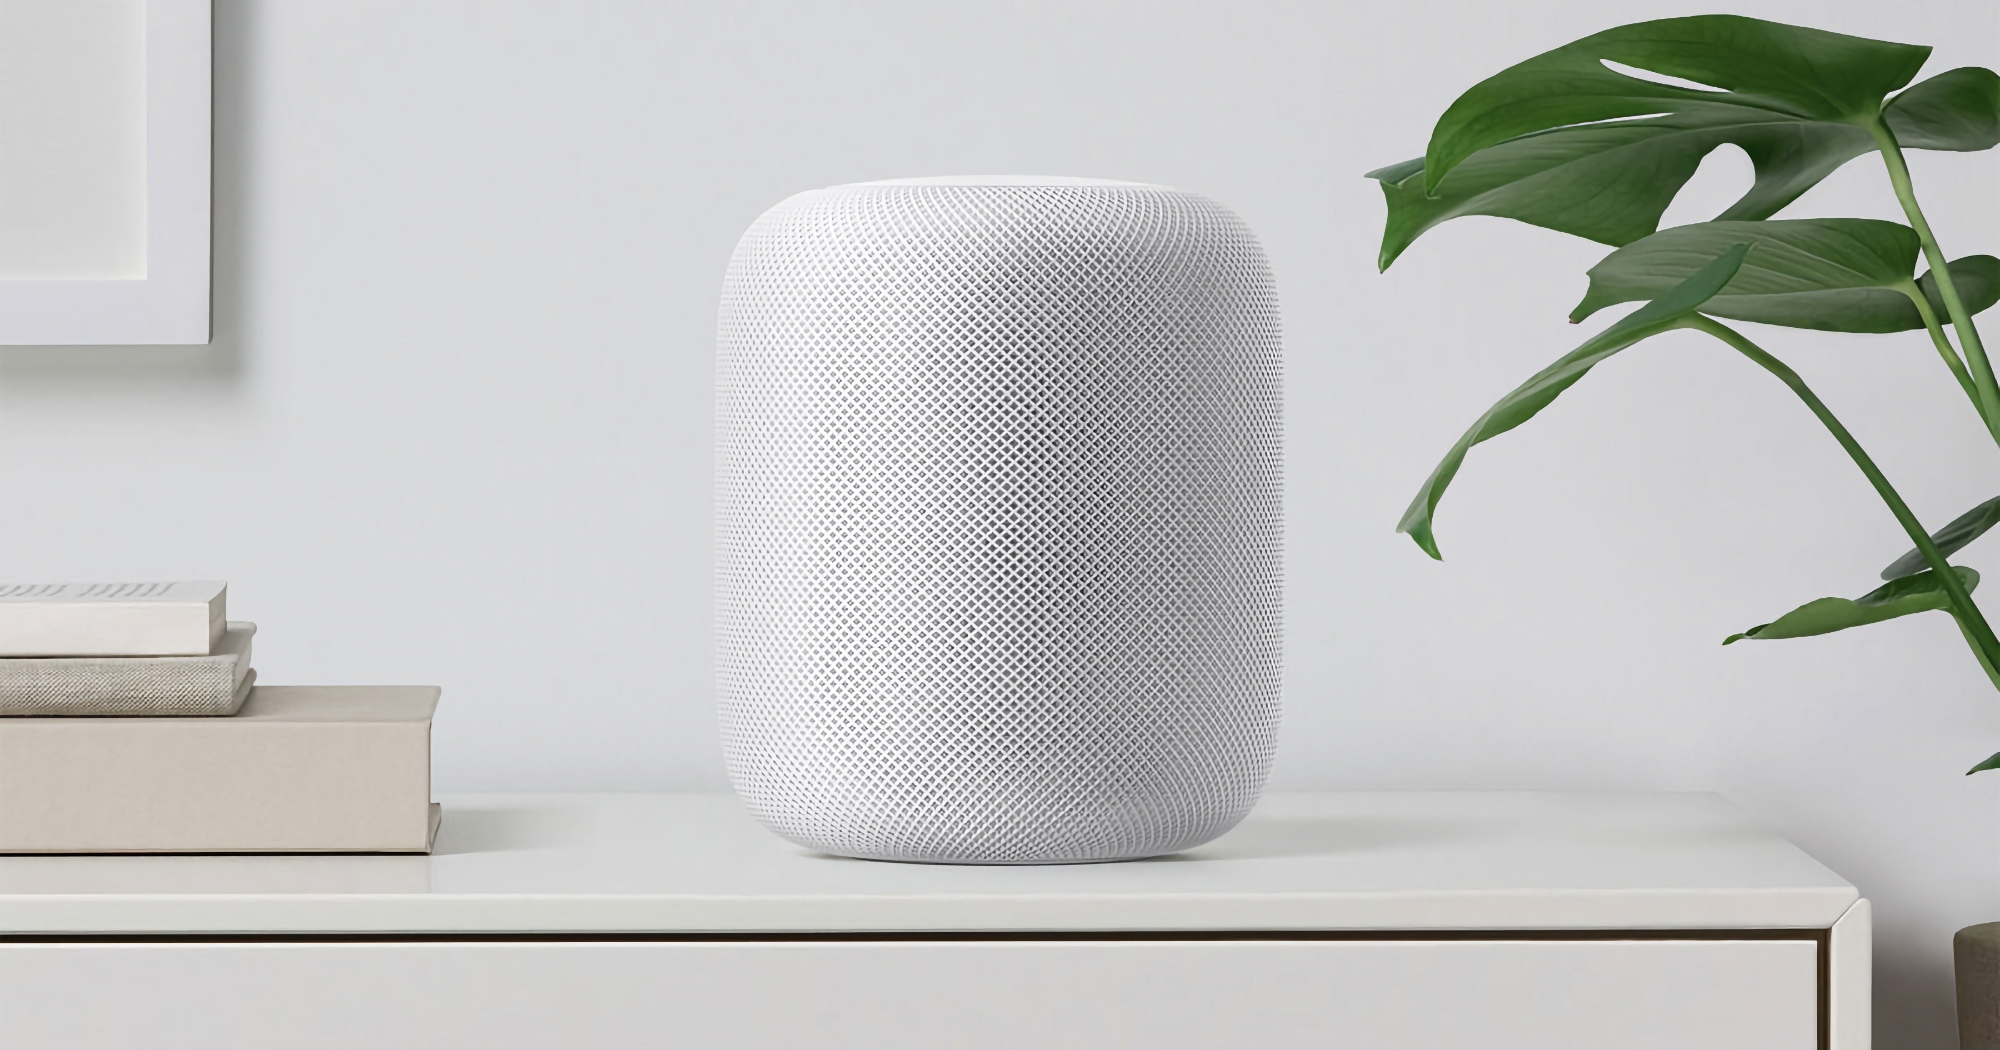 De façon inattendue ! Apple s'apprête à lancer une nouvelle enceinte intelligente HomePod de taille normale.